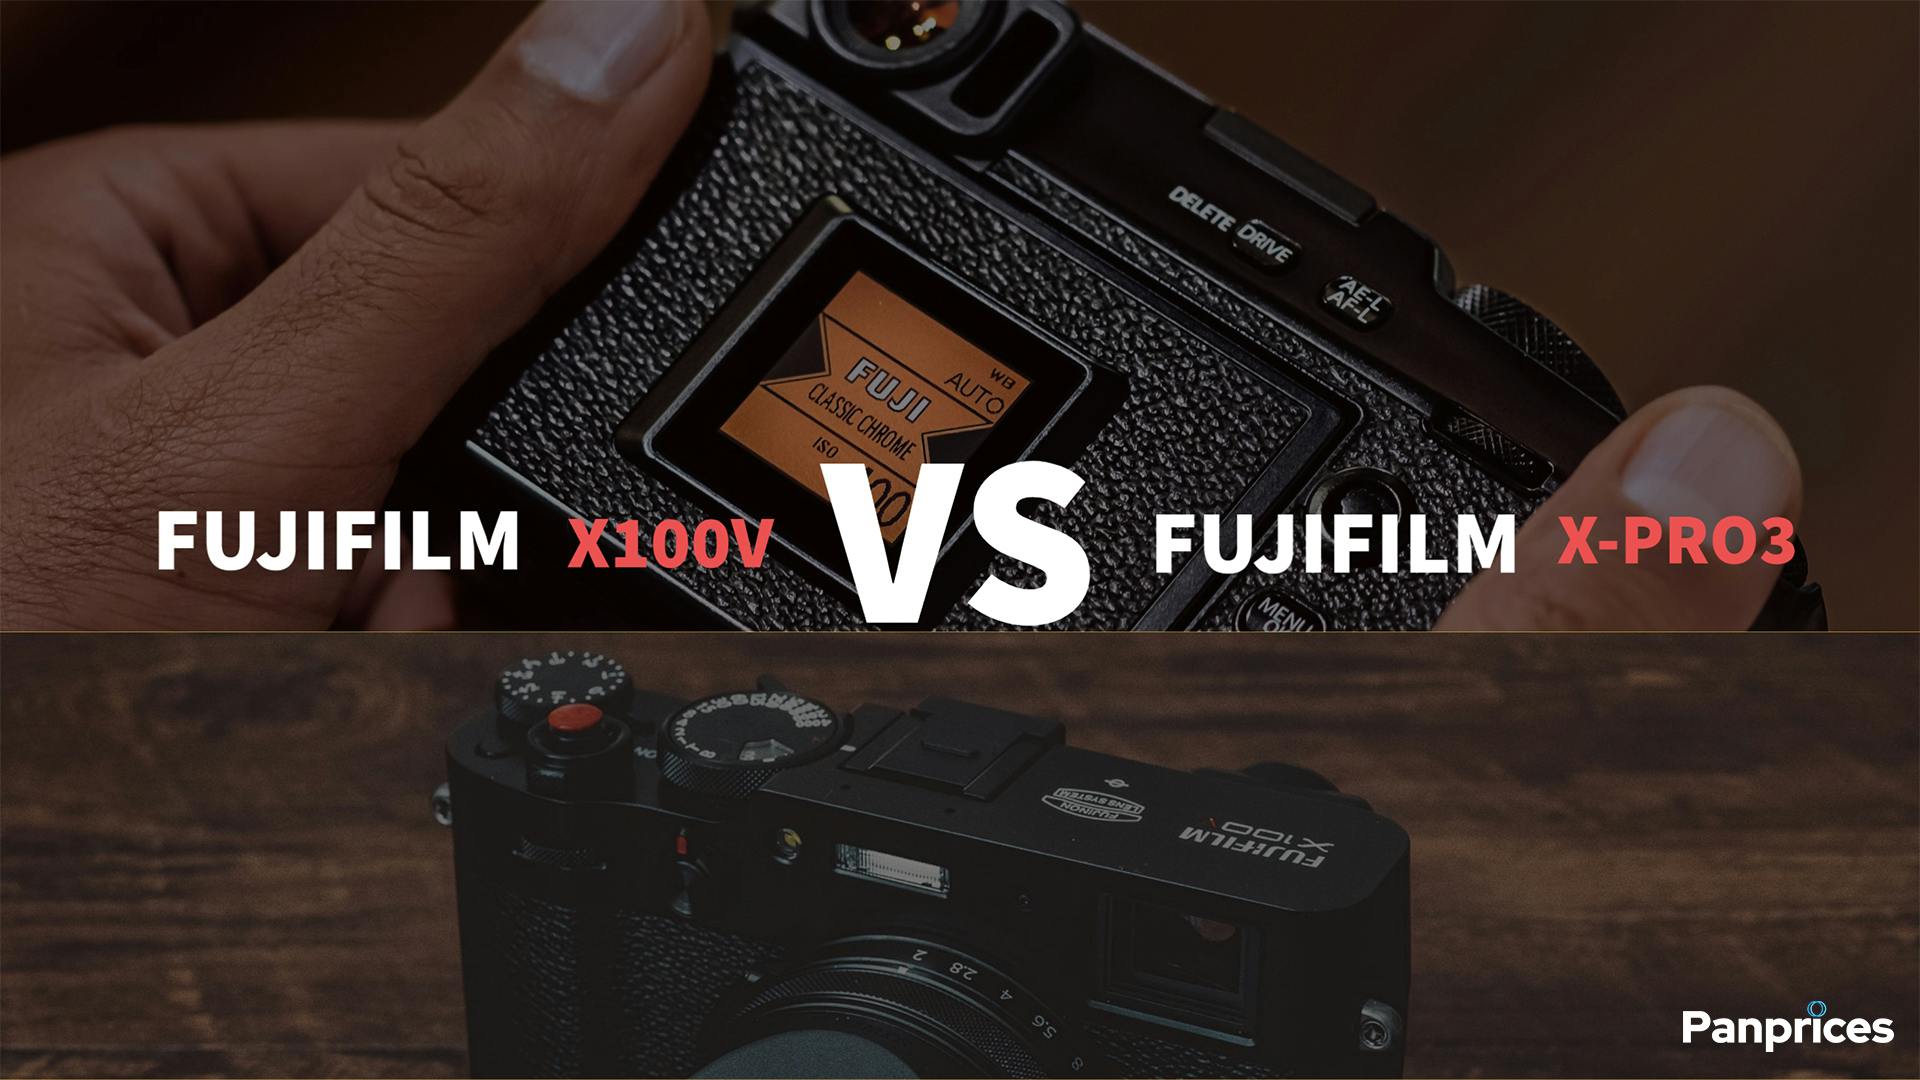 Fujifilm X100V VS Fujifilm X-Pro3 